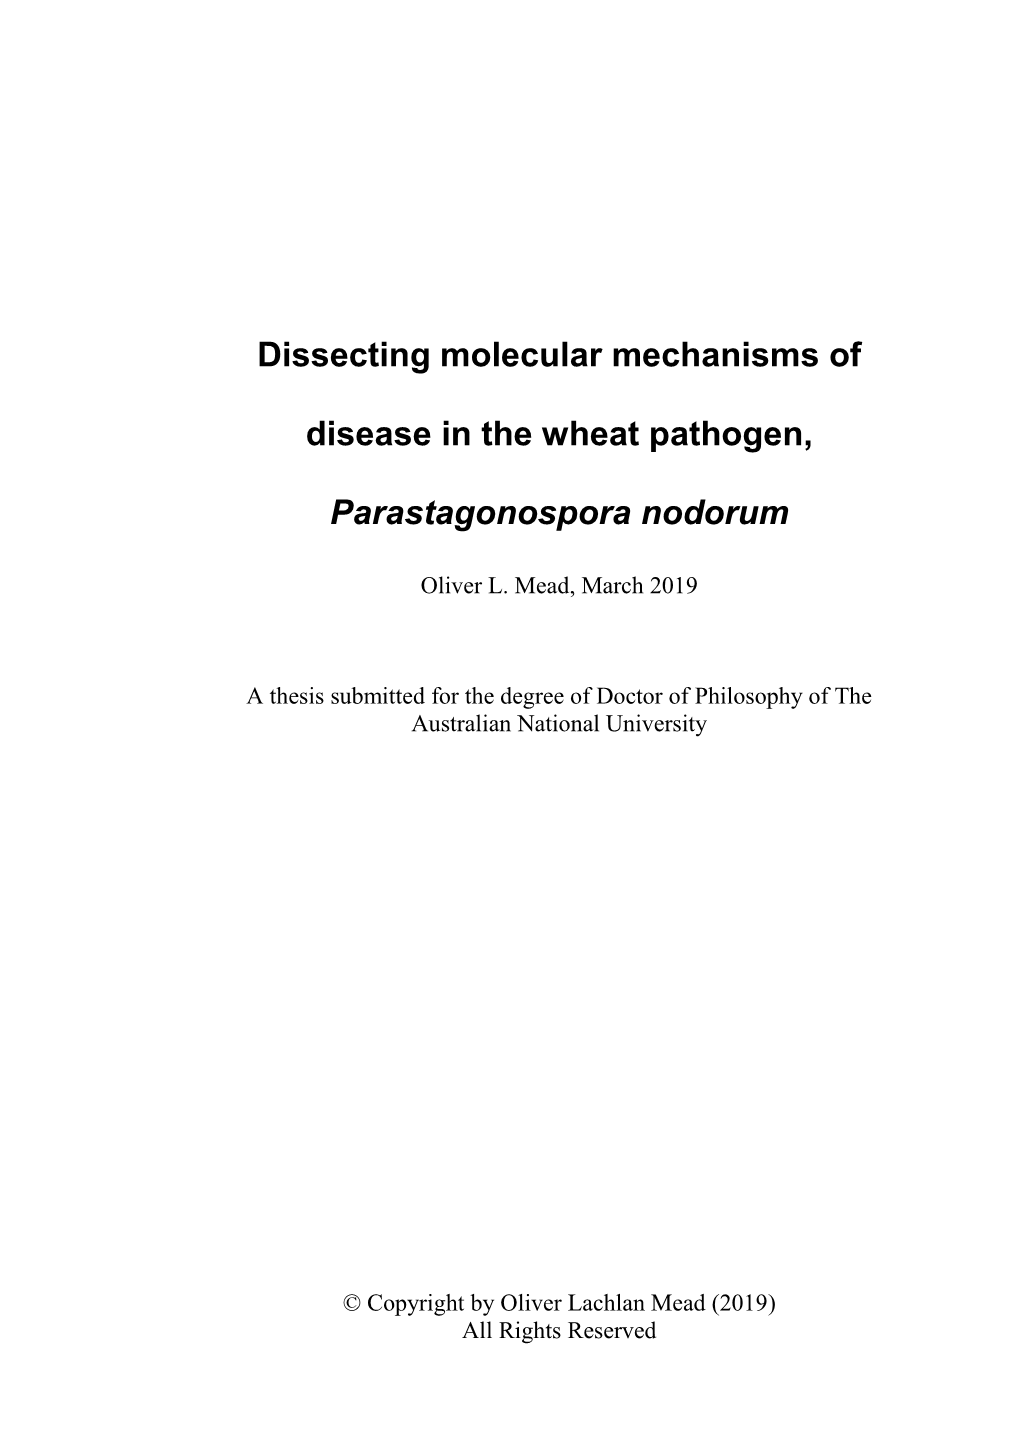 Dissecting Molecular Mechanisms of Disease in the Wheat Pathogen, Parastagonospora Nodorum